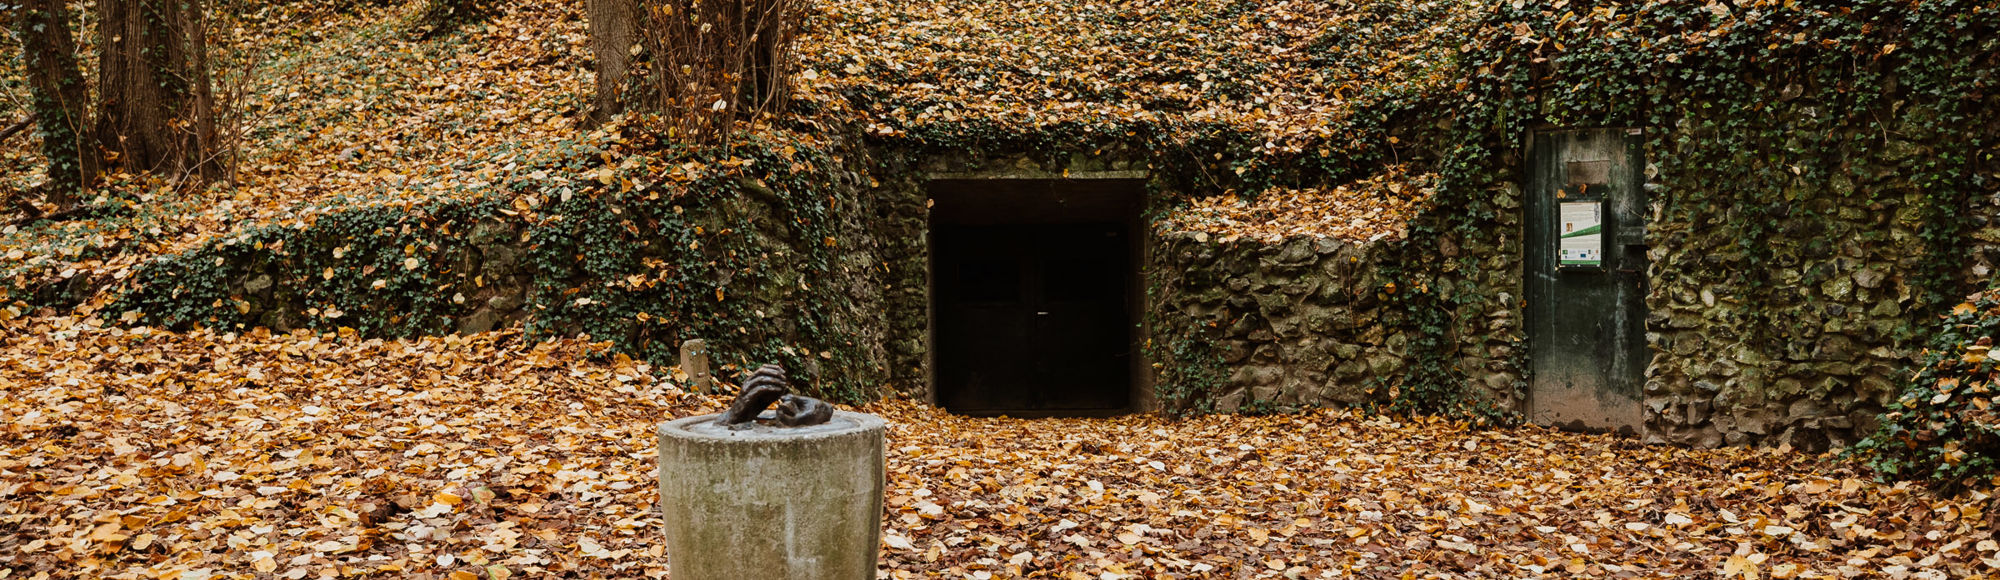 De ingang van de prehistorische vuursteenmijn Rijckholt bedolven onder de herfstbladeren